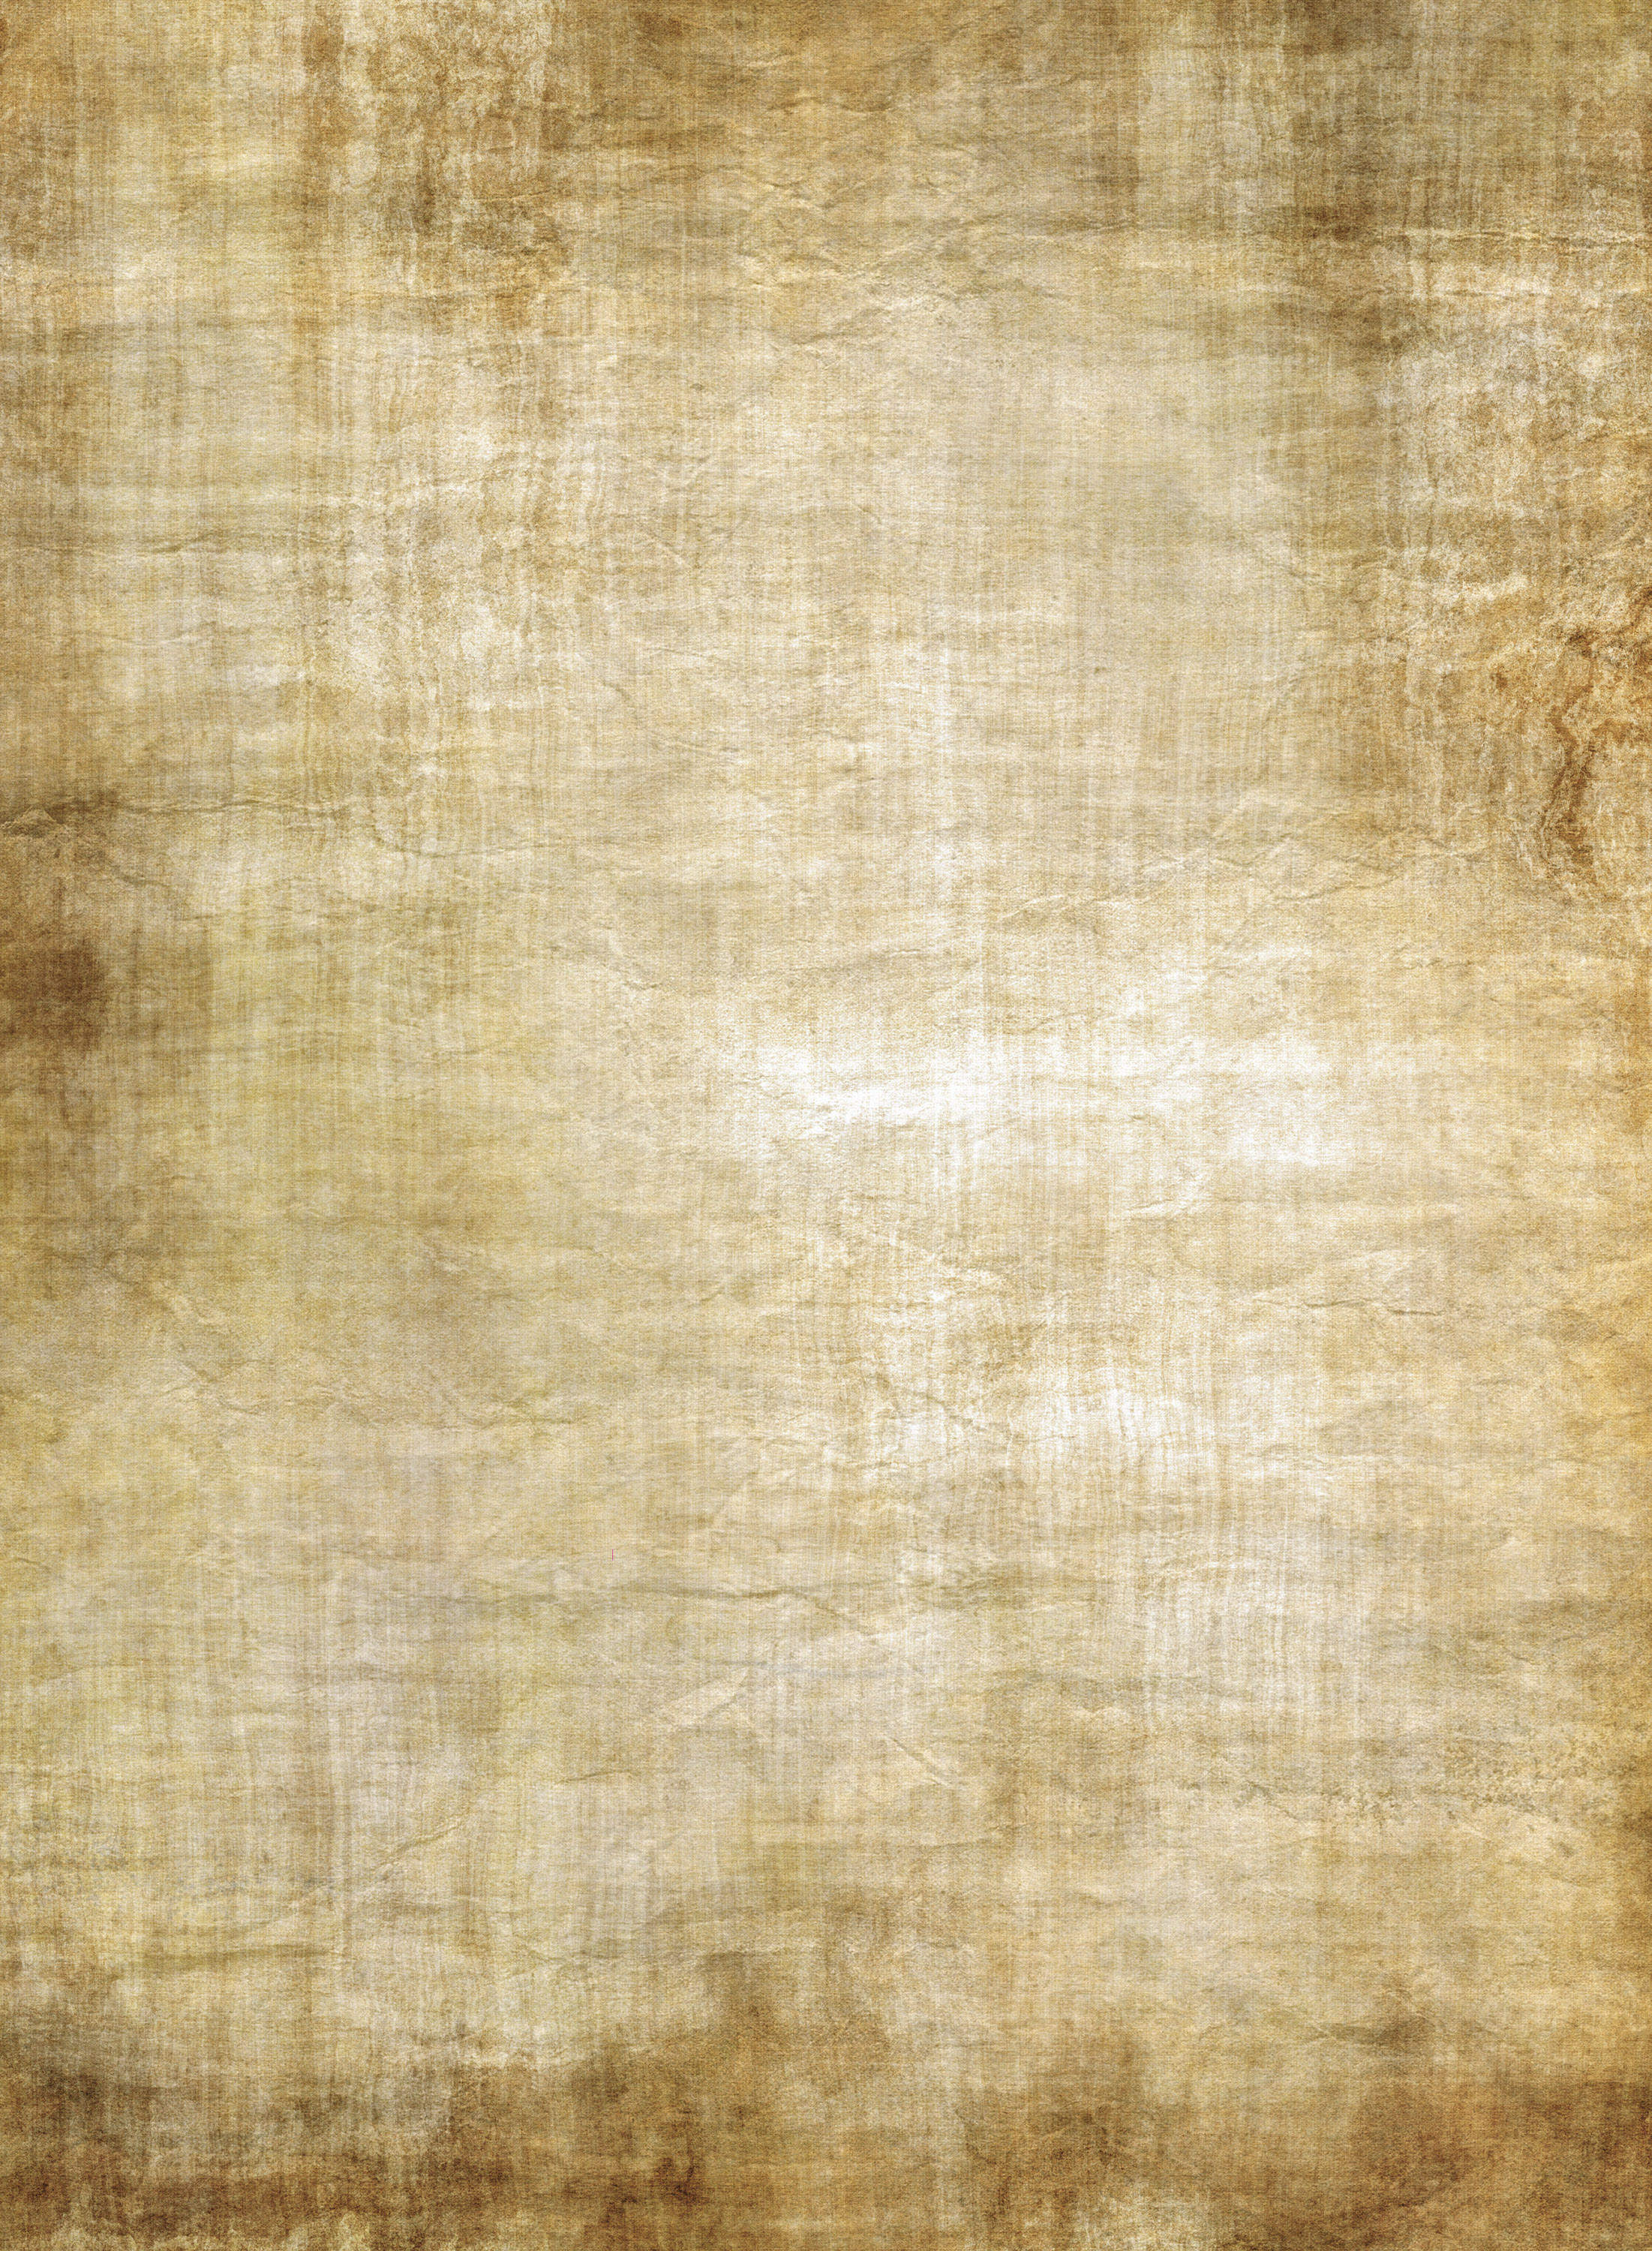 Parchment Background HQ Desktop Wallpaper 